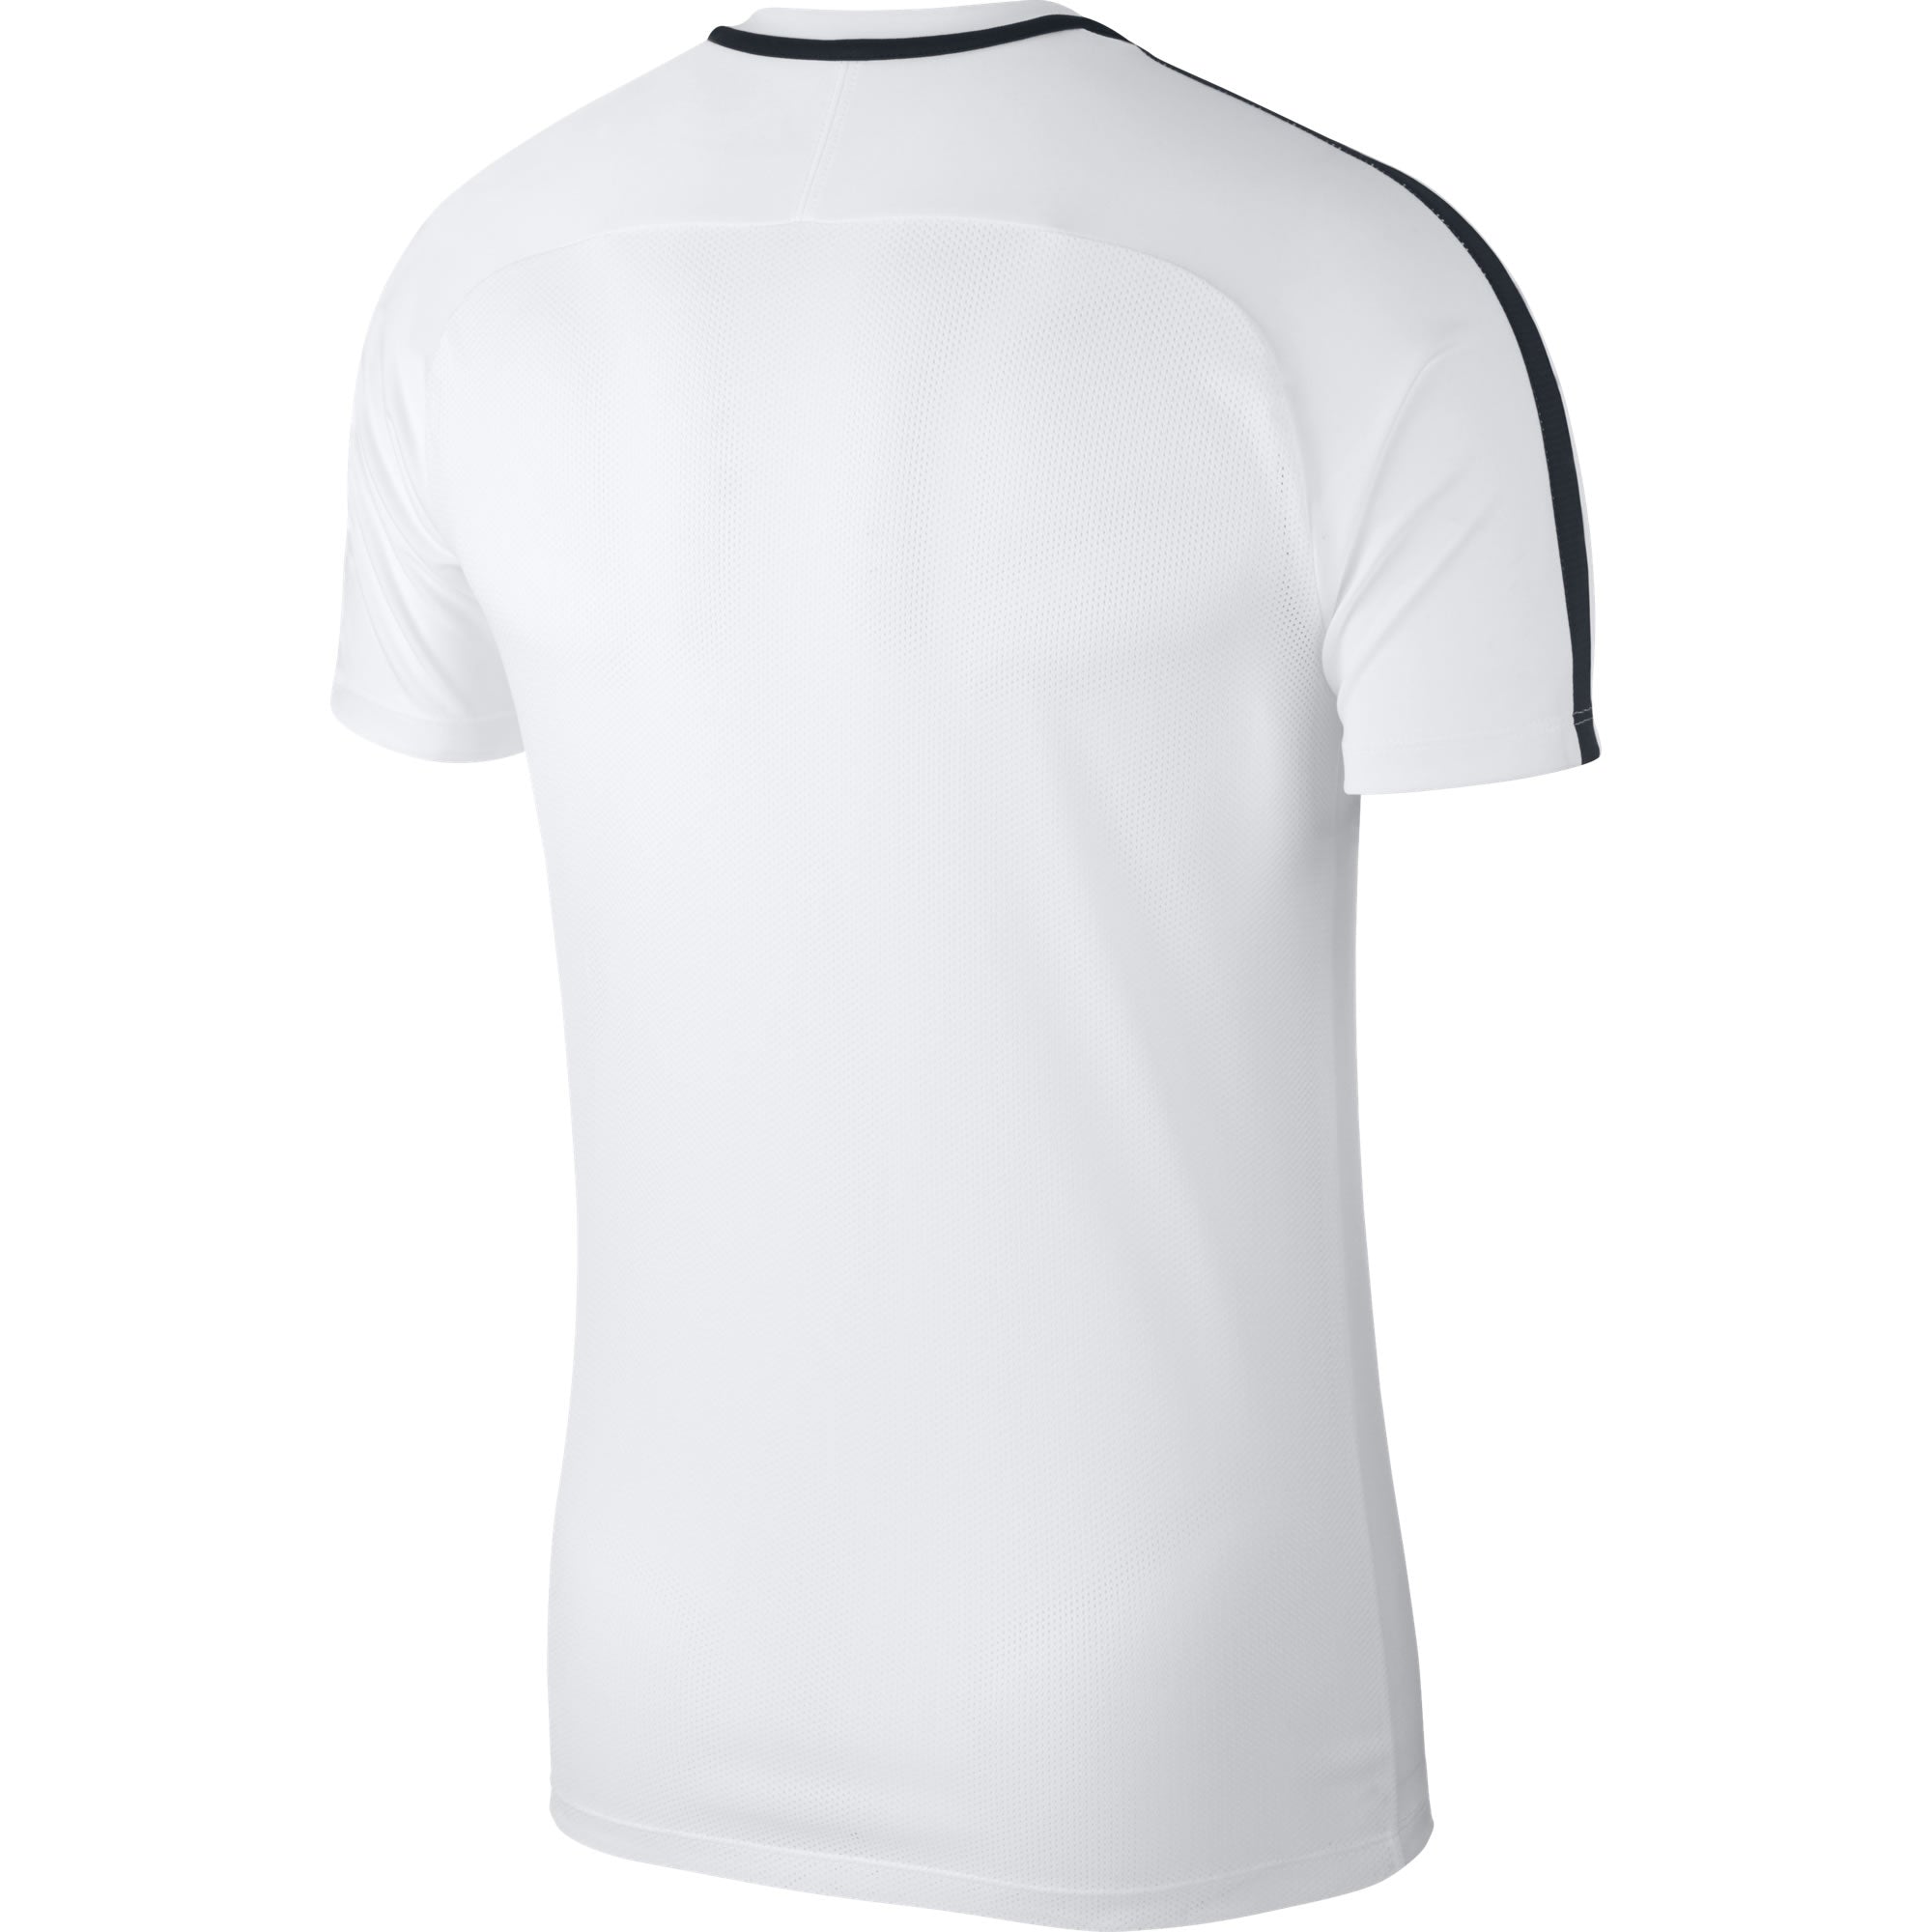 Nike Training Top (White/Black) – Customkit.com